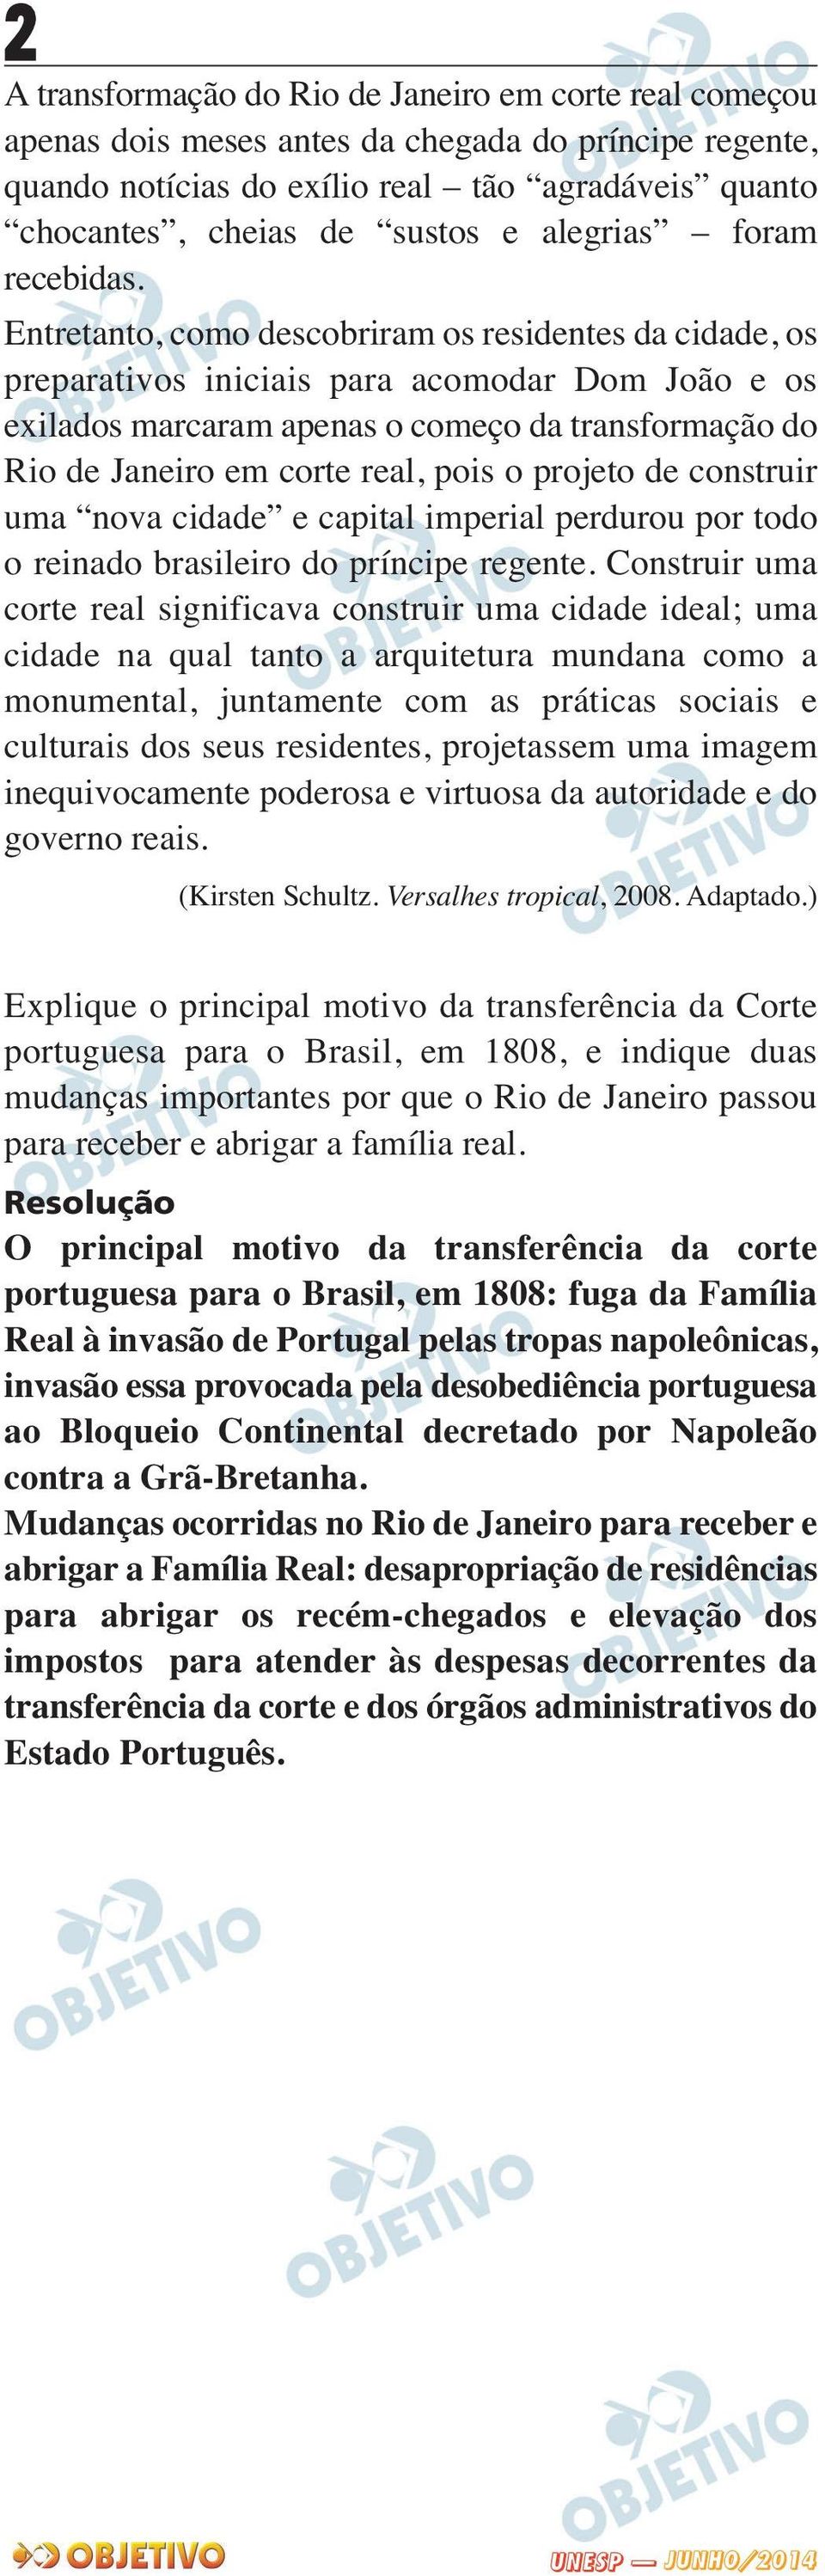 Entretanto, como descobriram os residentes da cidade, os preparativos iniciais para acomodar Dom João e os exilados marcaram apenas o começo da transformação do Rio de Janeiro em corte real, pois o